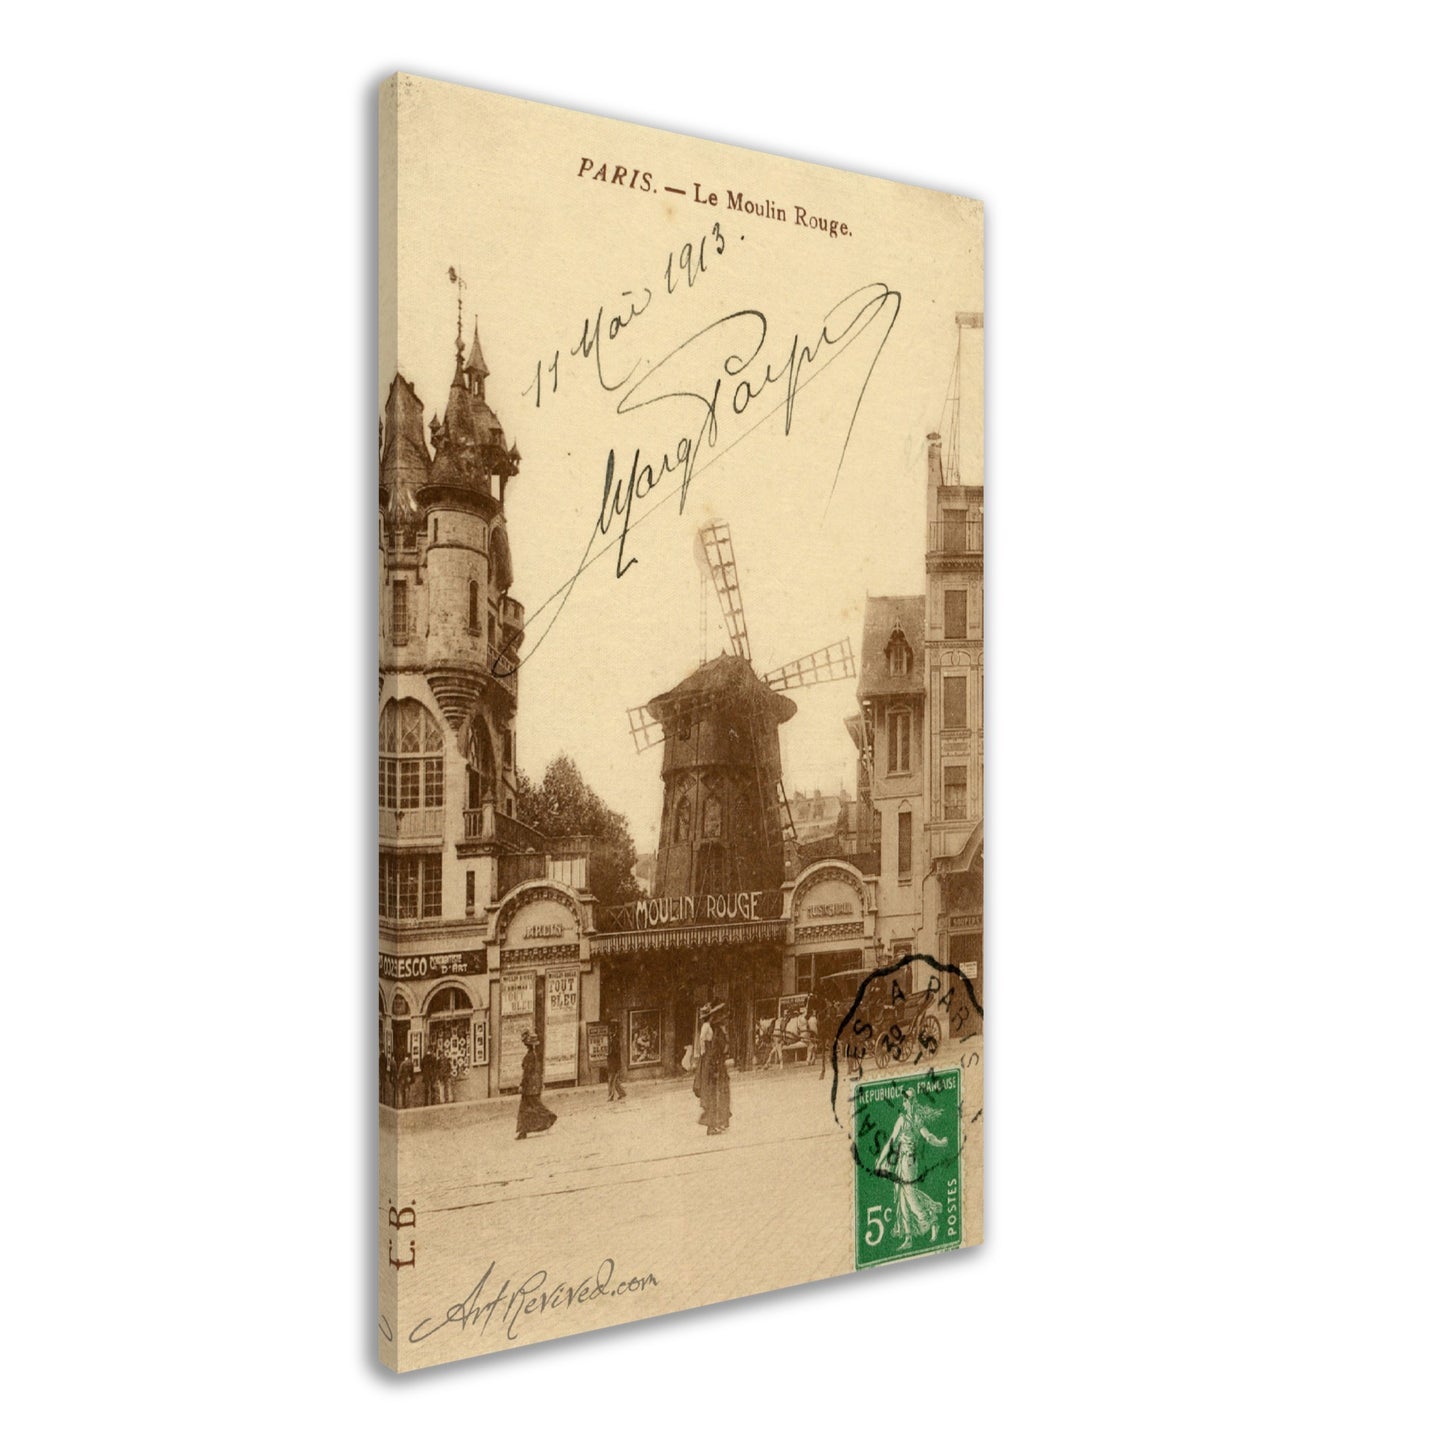 Paris La Moulin Rouge 05-11-1913